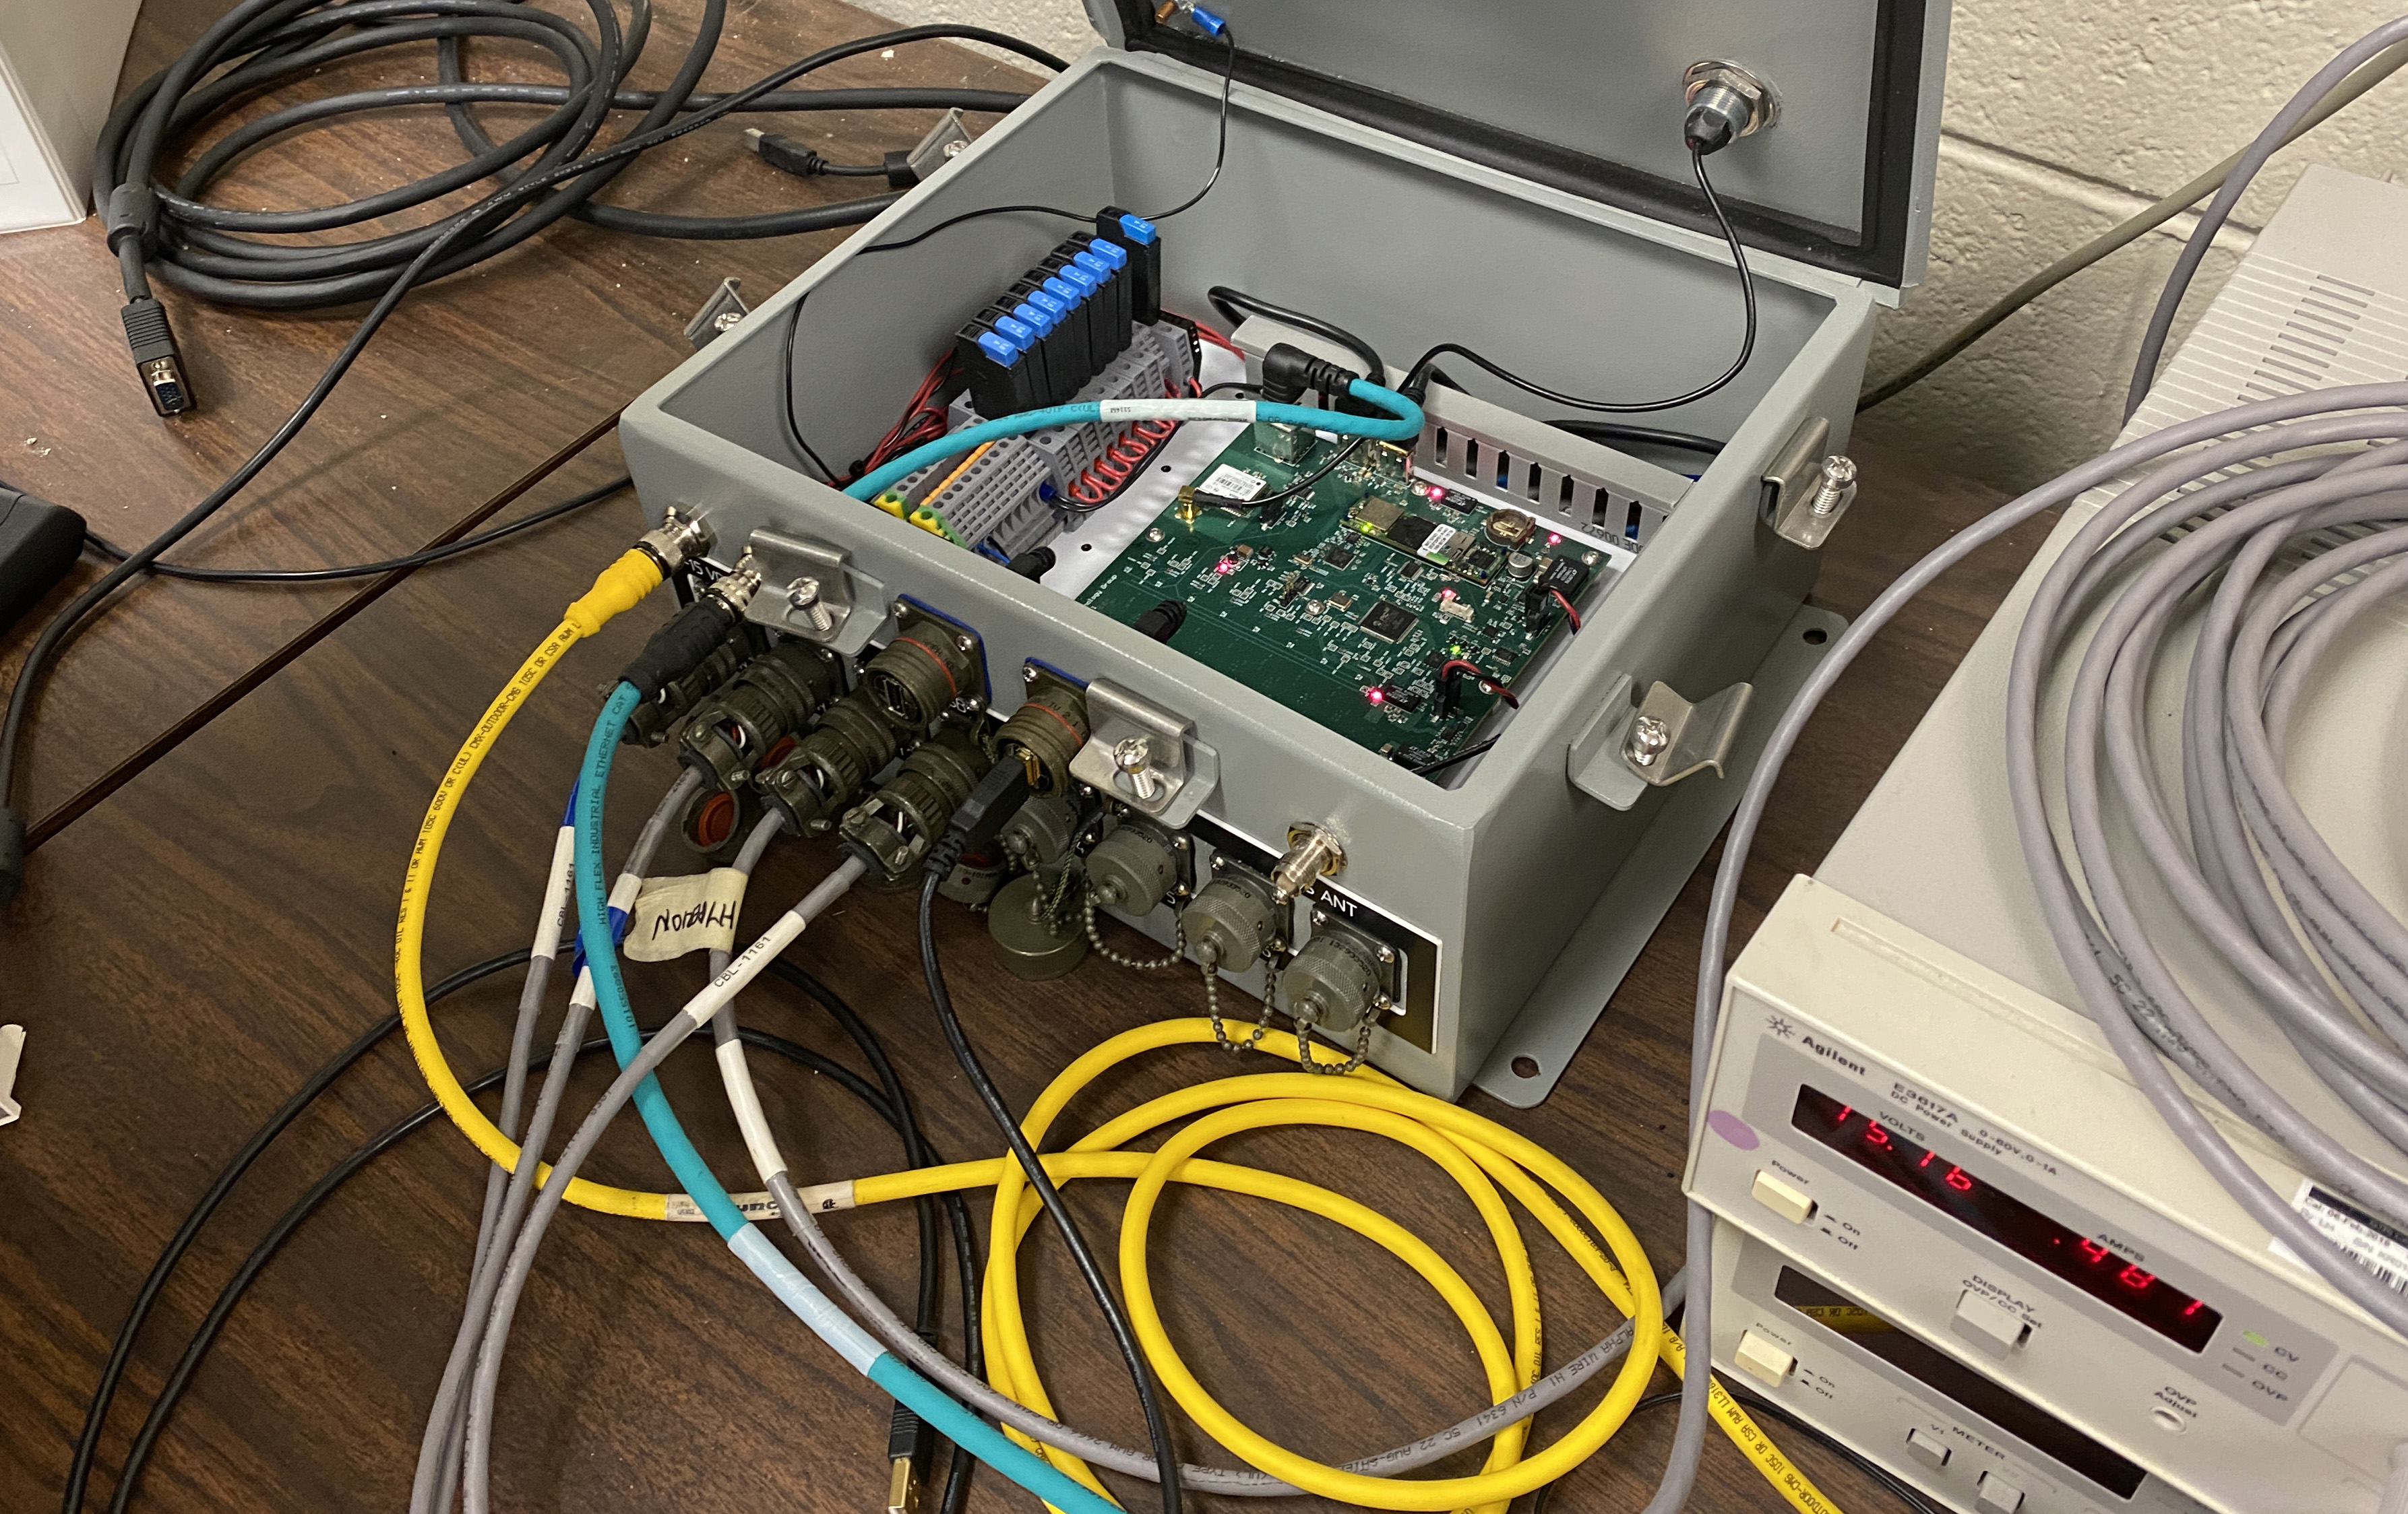 Computer that analyzes infrasound signals